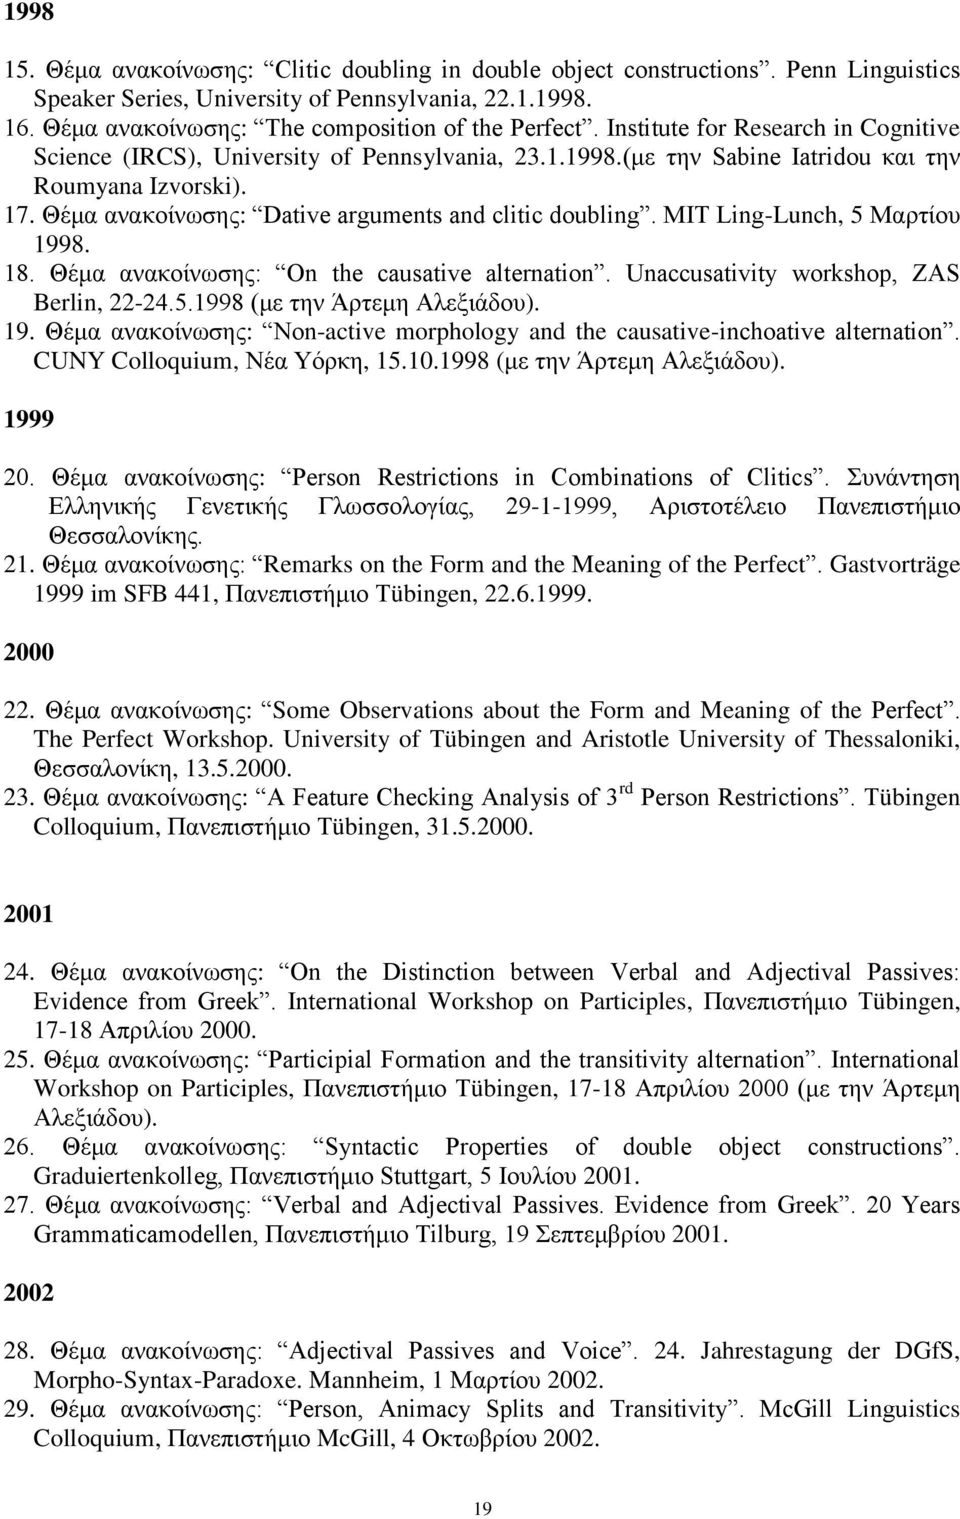 Θέμα ανακοίνωσης: Dative arguments and clitic doubling. MIT Ling-Lunch, 5 Μαρτίου 1998. 18. Θέμα ανακοίνωσης: On the causative alternation. Unaccusativity workshop, ZAS Berlin, 22-24.5.1998 (με την Άρτεμη Αλεξιάδου).